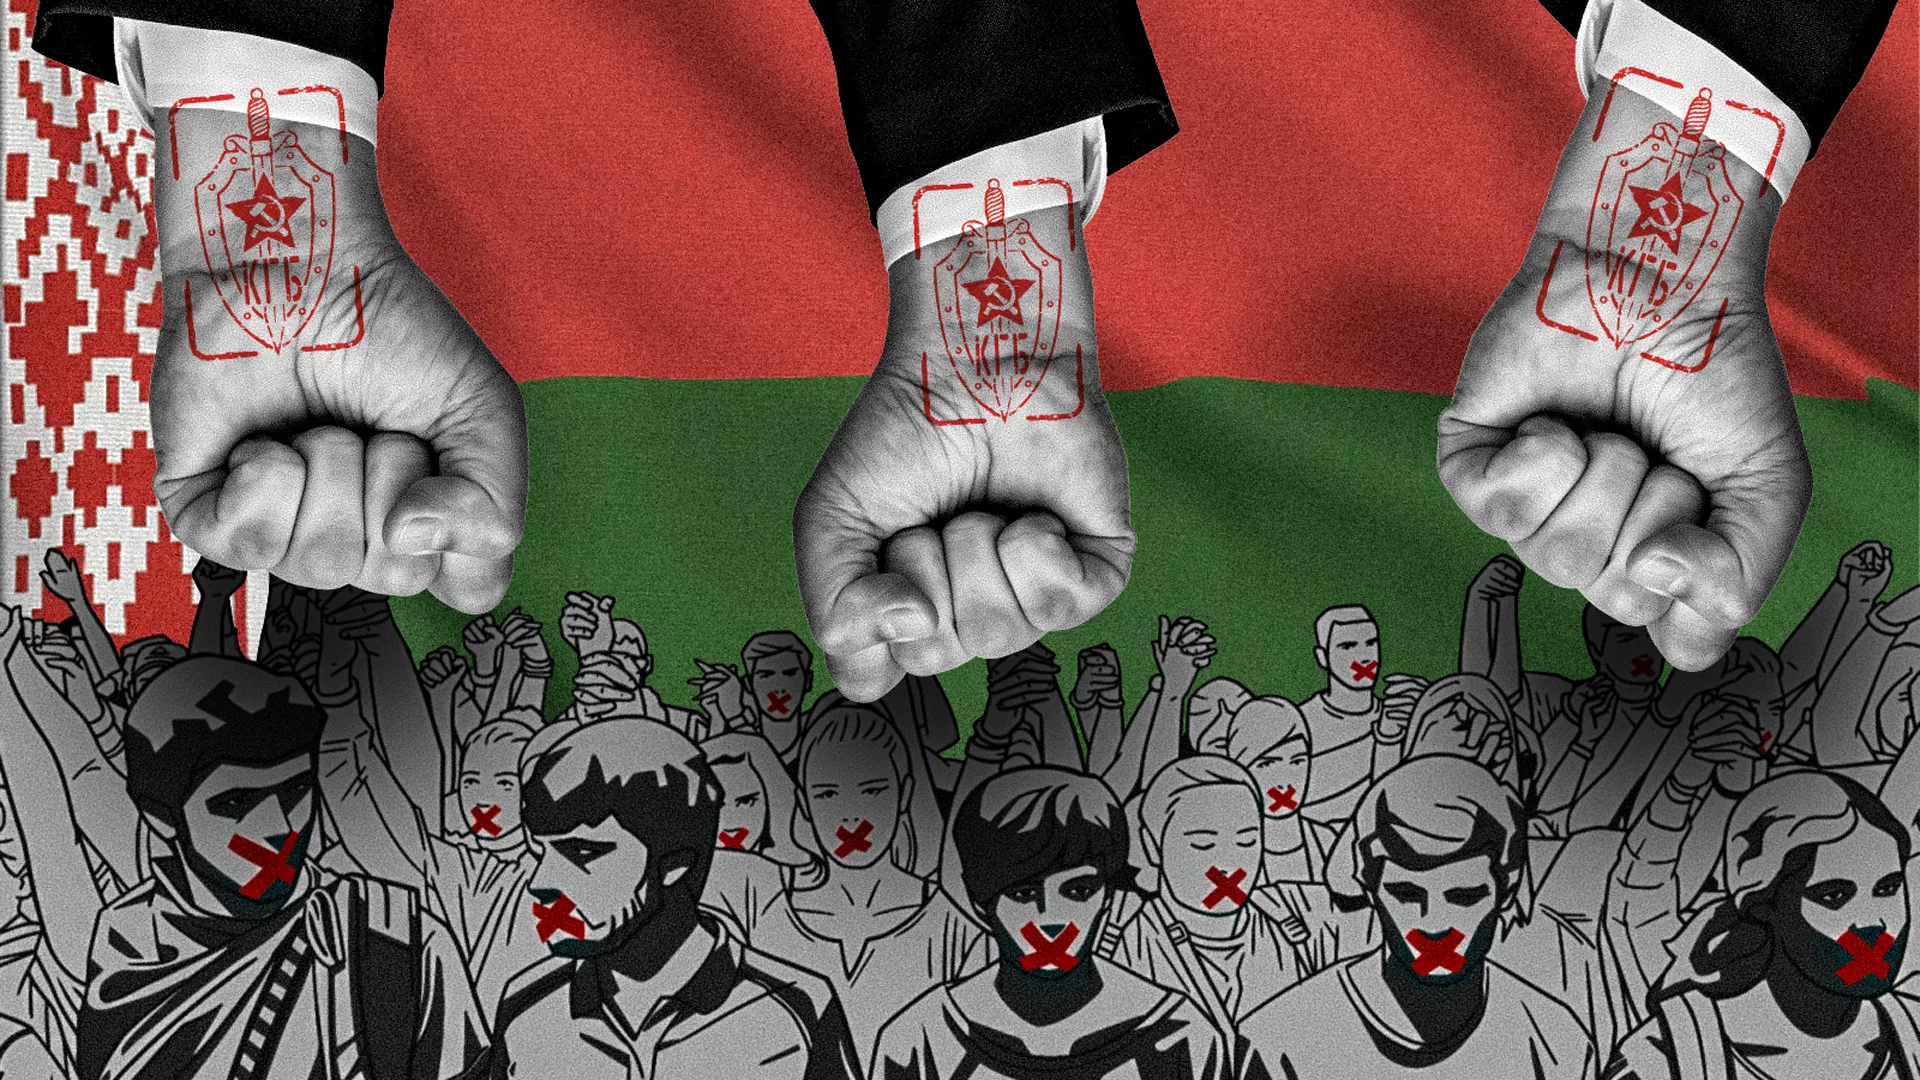 Aggiornamento sulla Bielorussia: l’assurda repressione continua